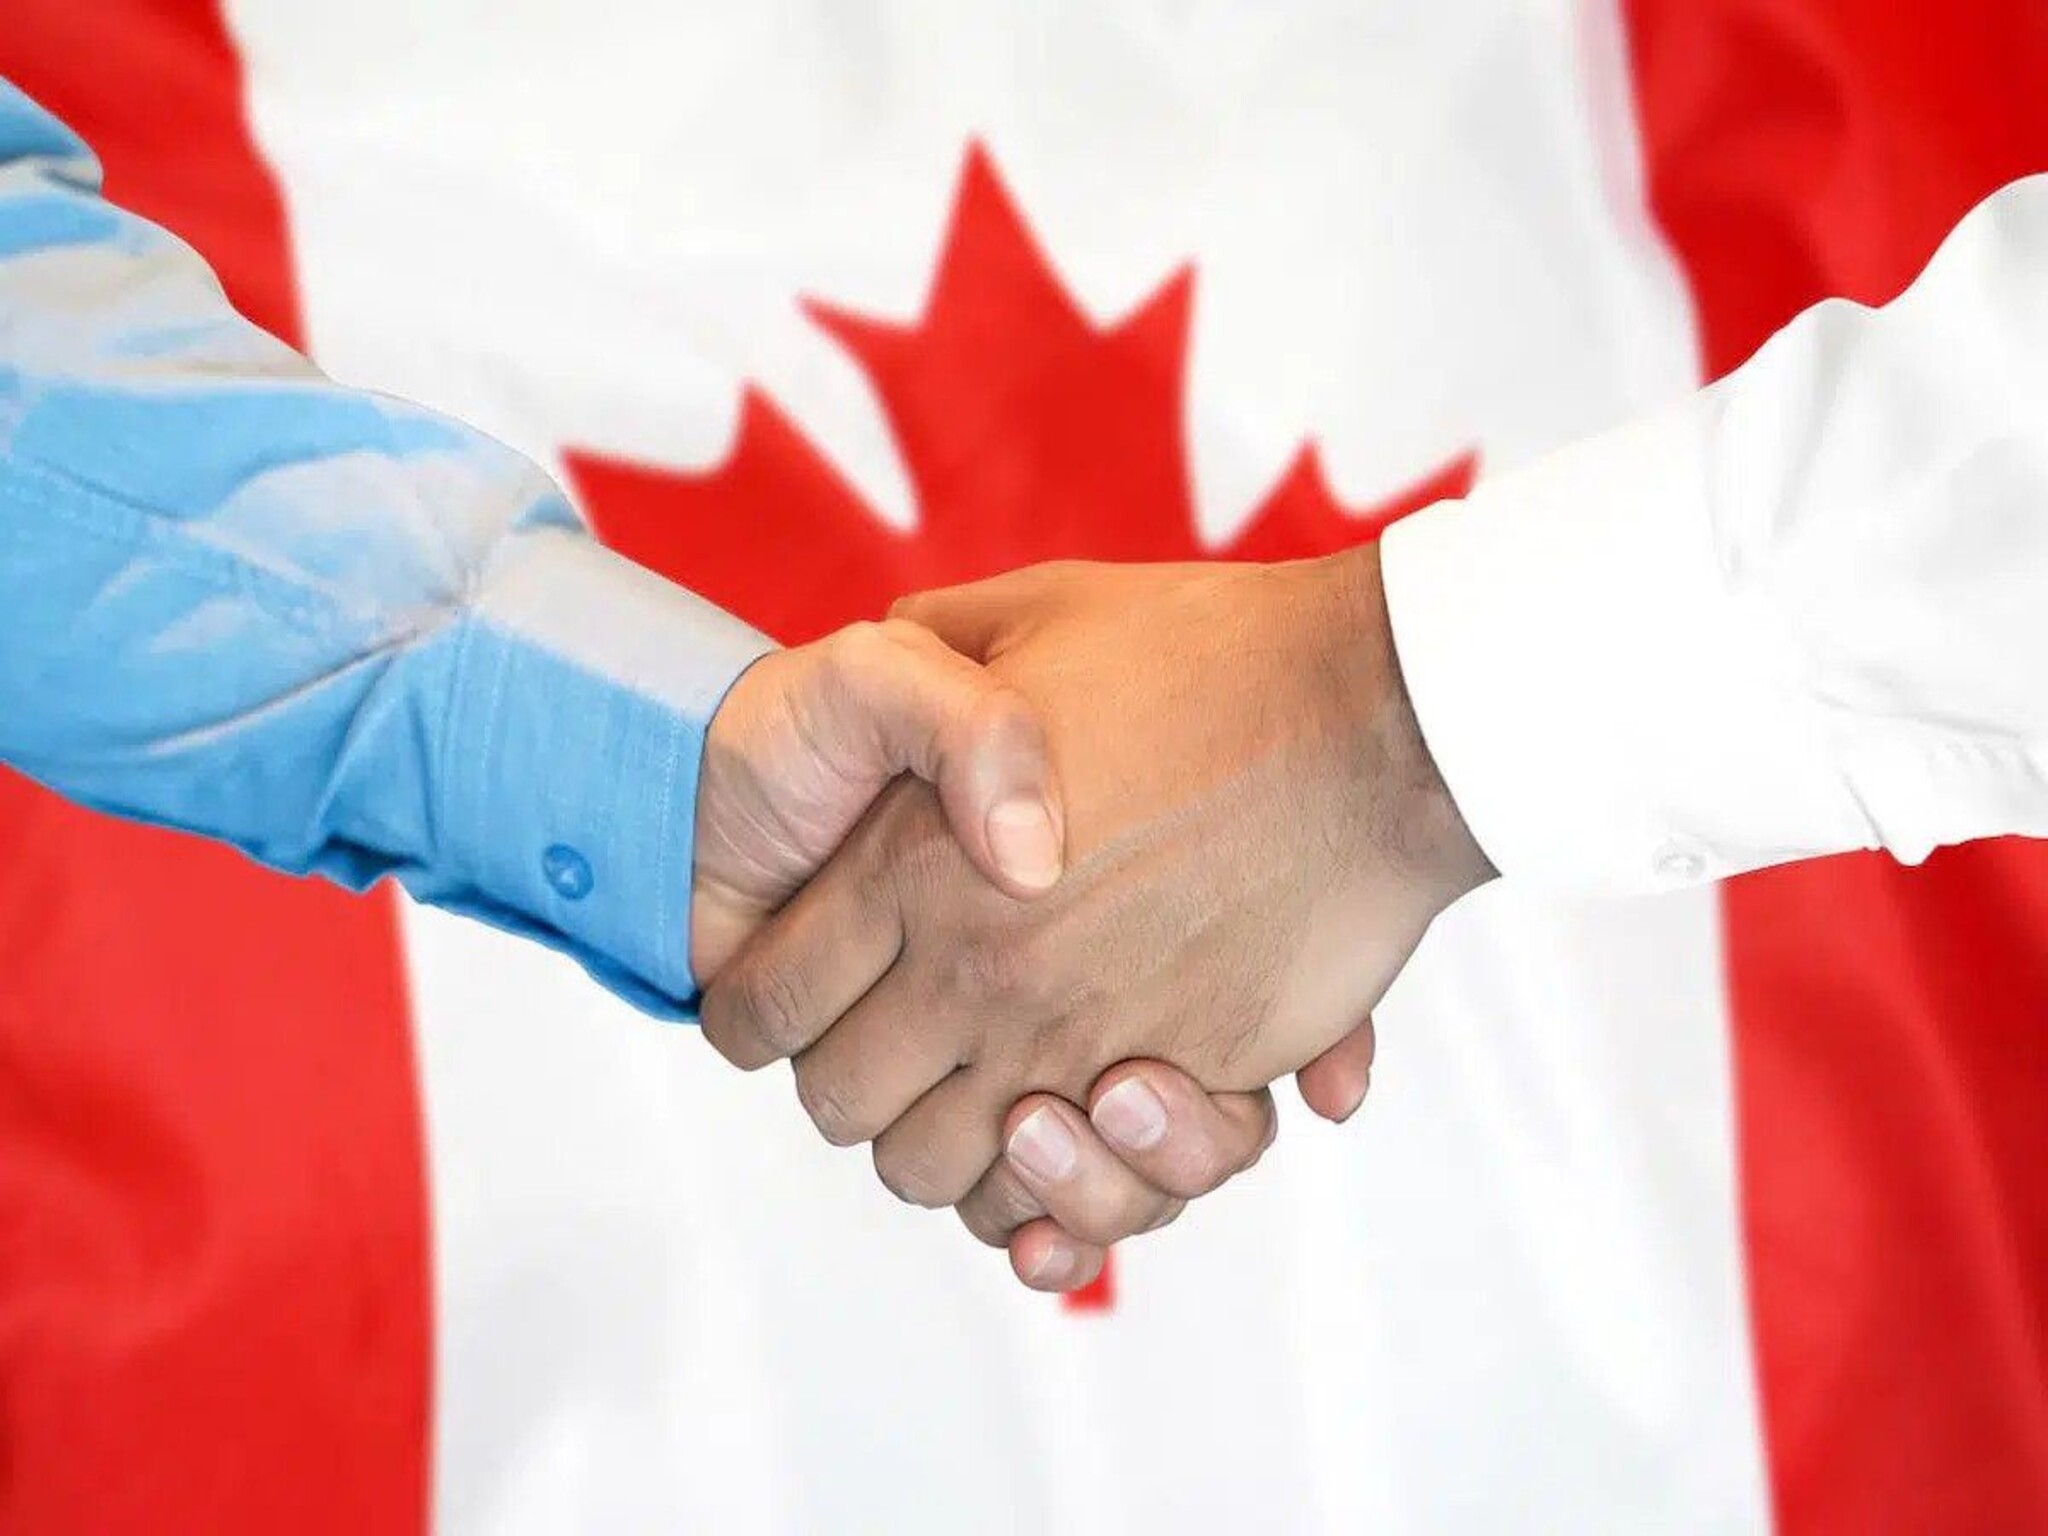 مميزات برنامج العمال الأجانب المؤقتين في كندا TFWP من أجل أصحاب العمل والباحثين عن وظائف